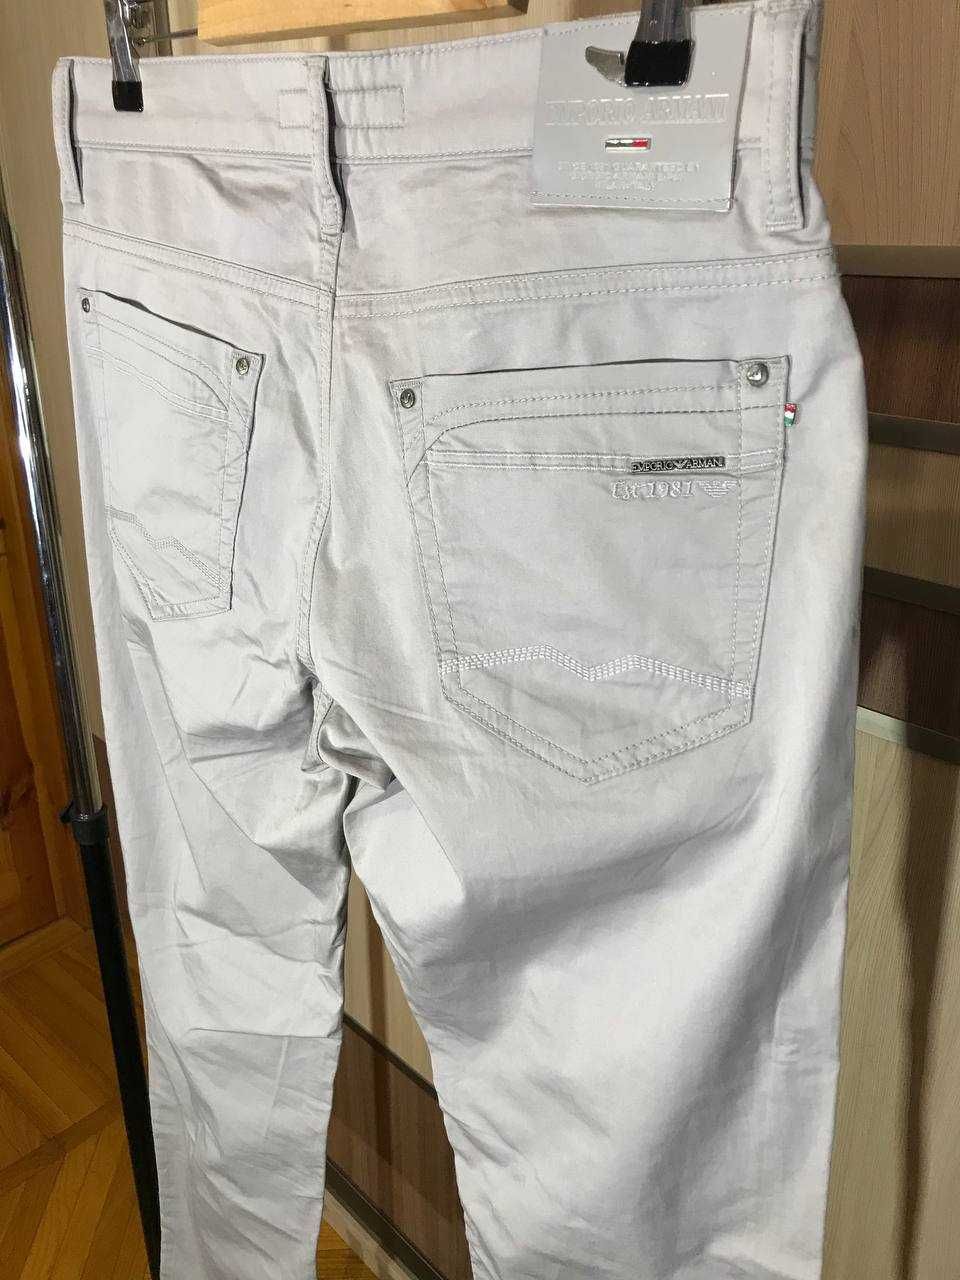 Мужские джинсы штаны Emporio Armani Vintage Size 30 оригинал